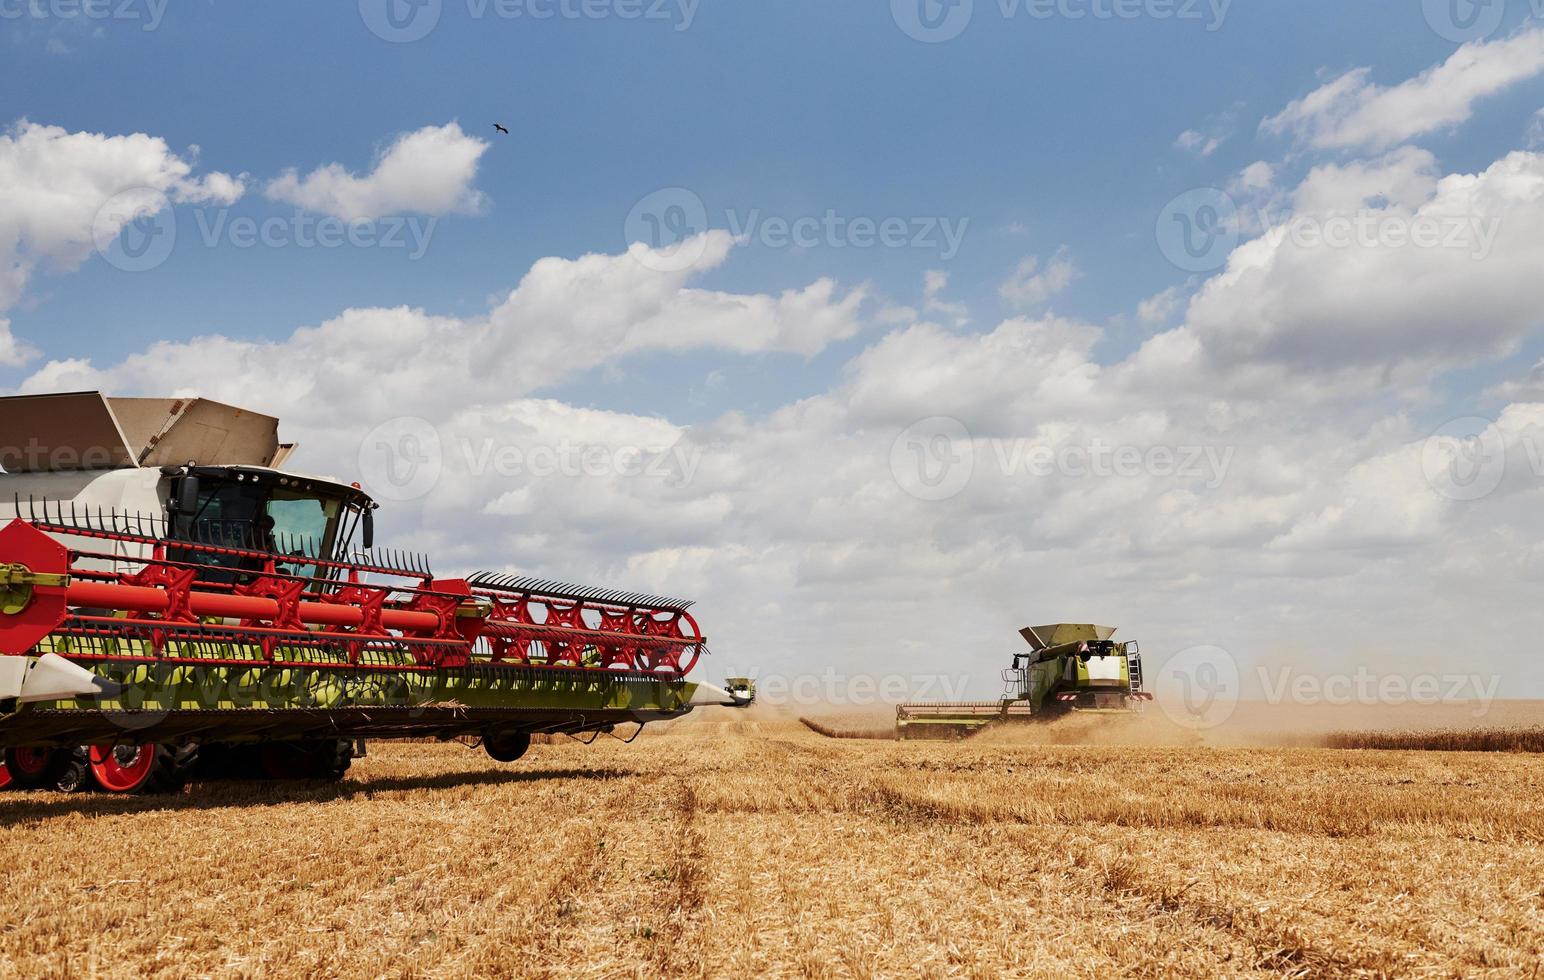 cosechadoras grandes que trabajan en el campo agrícola en verano foto